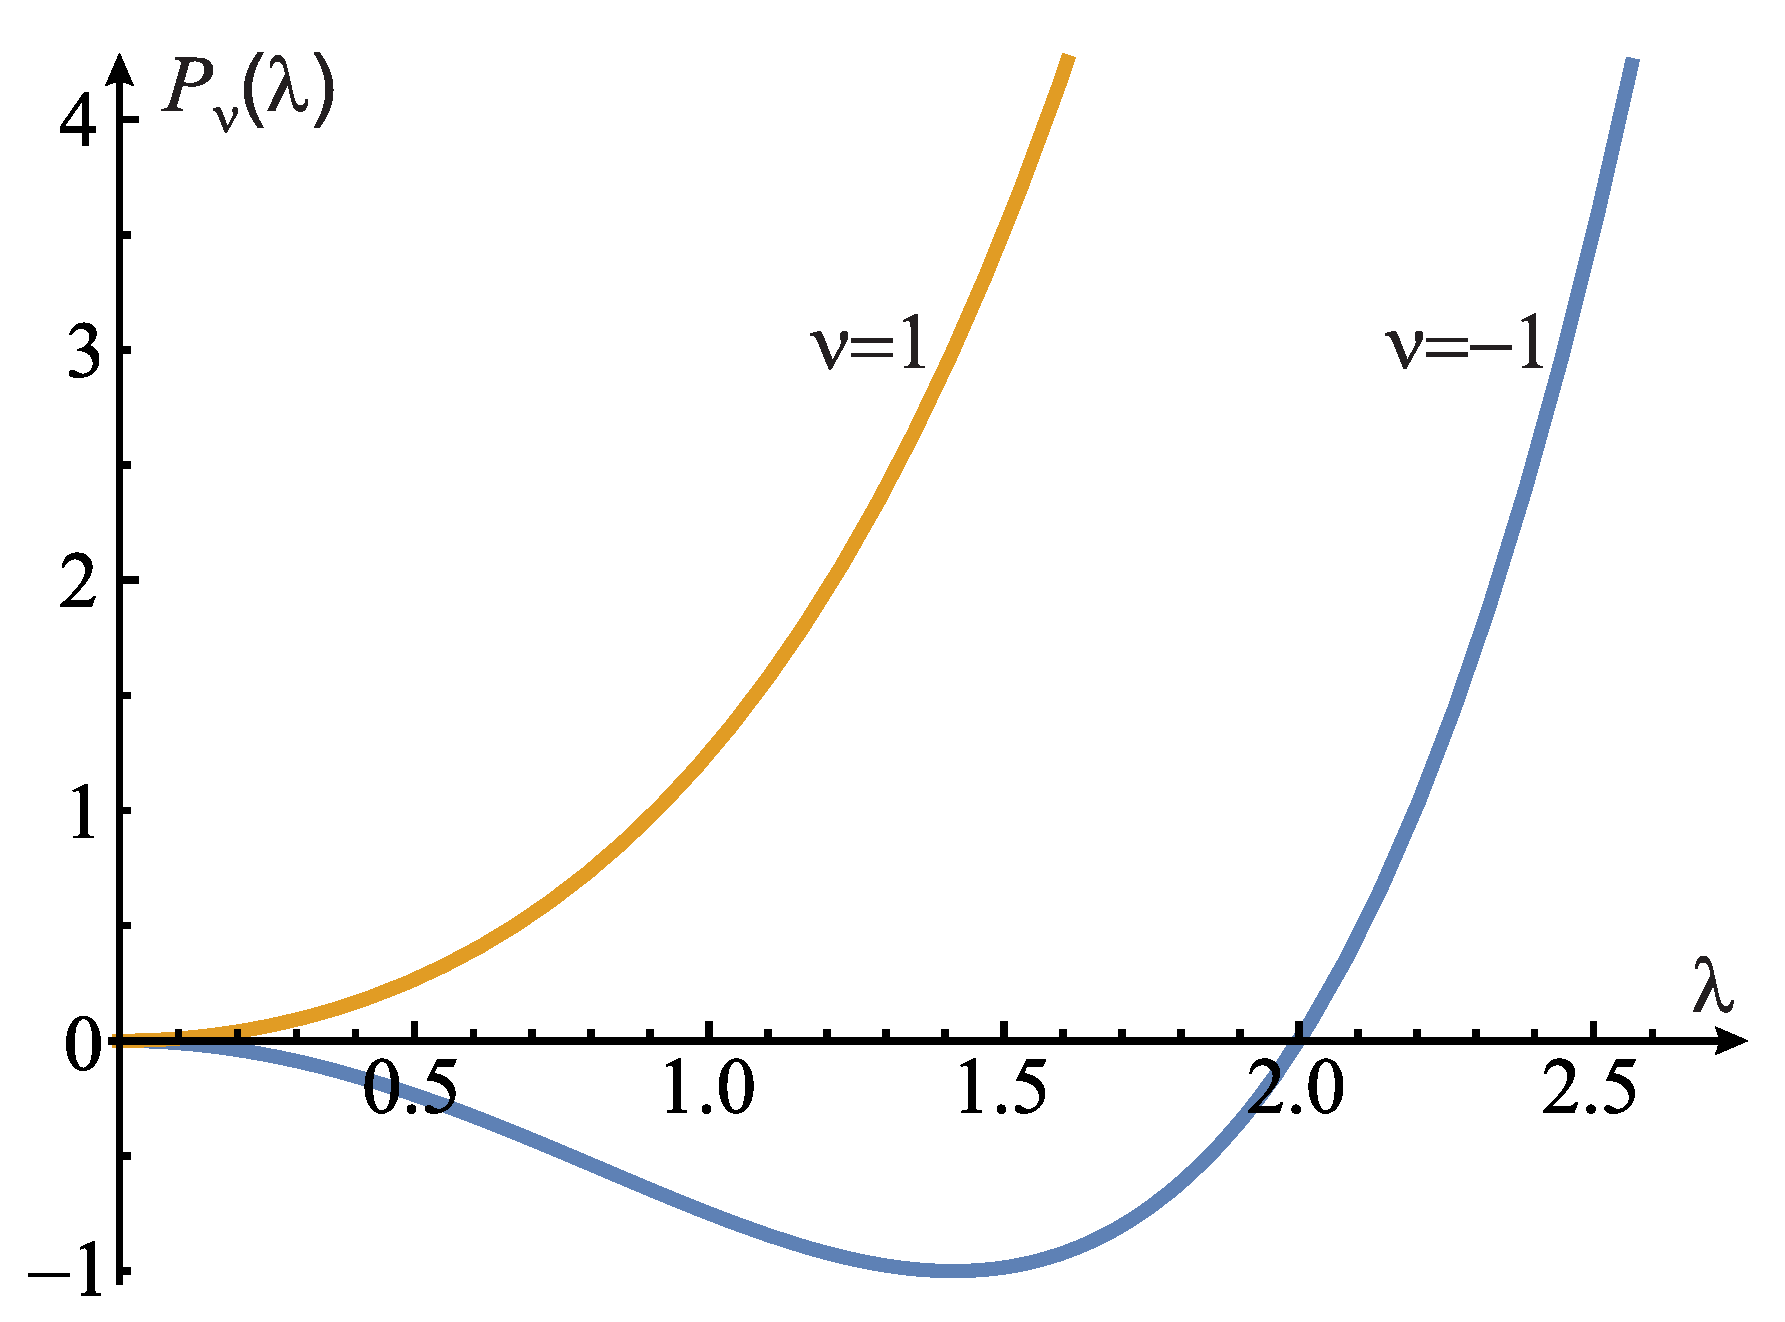 Problem 4: Dirac 8-function potentials, 1D system